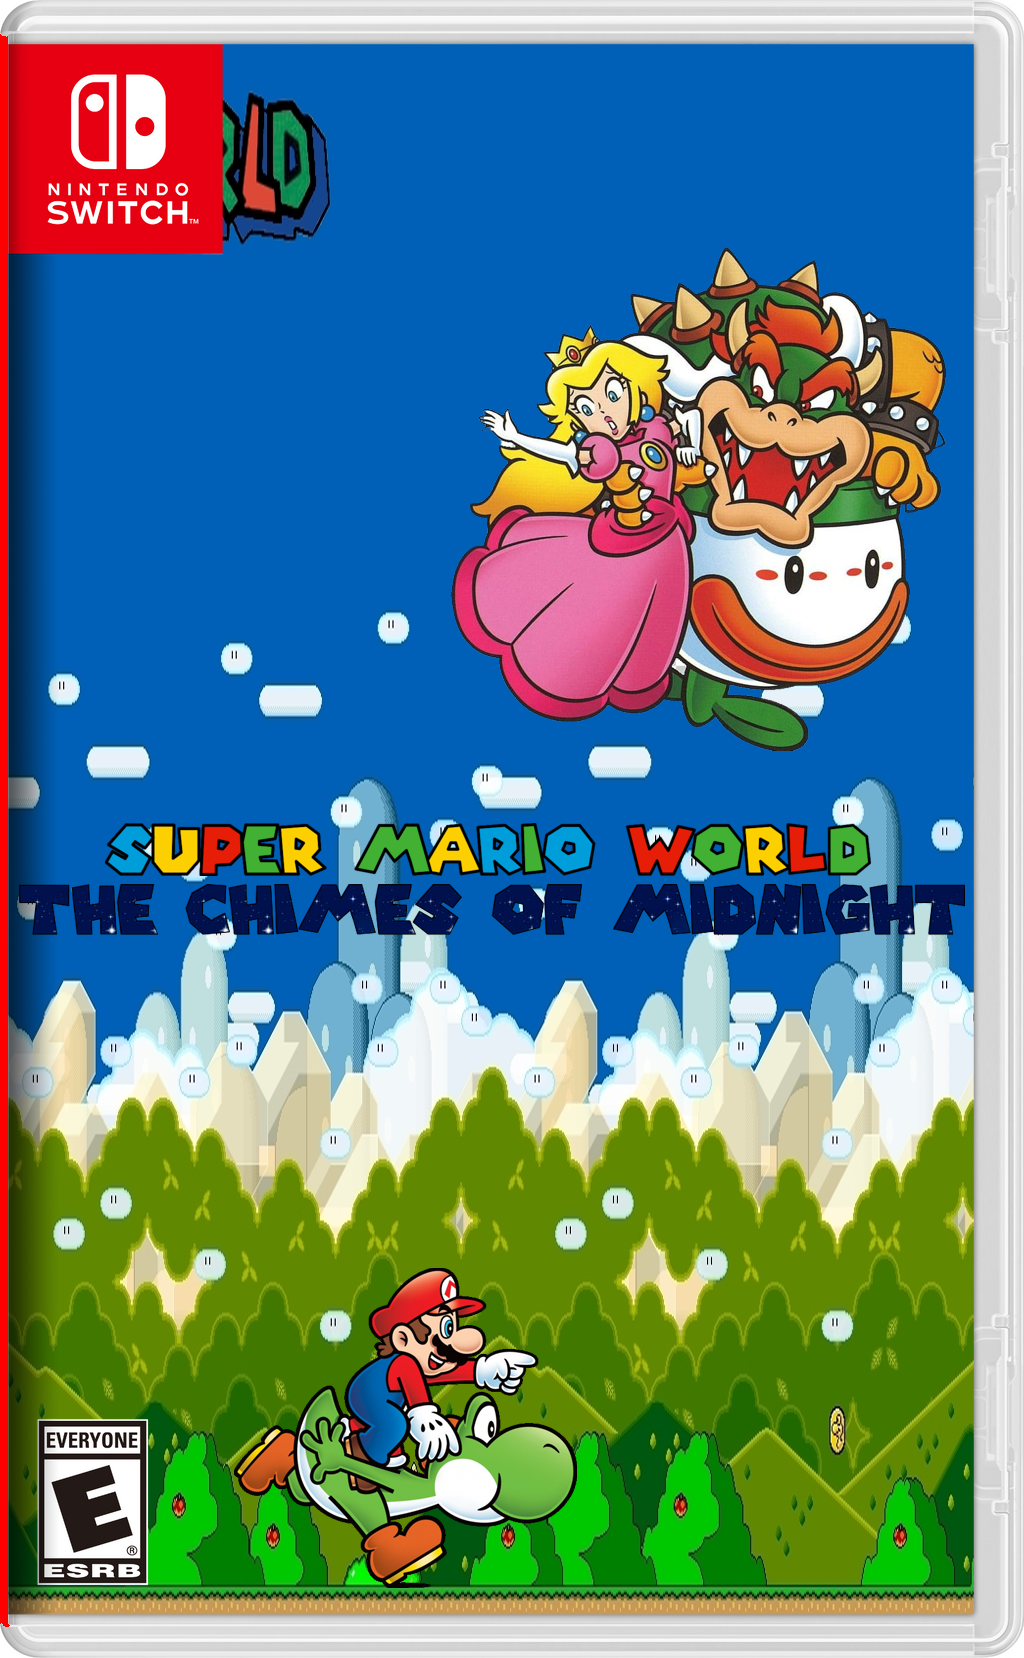 Super Mario Party 3*, Fantendo - Game Ideas & More